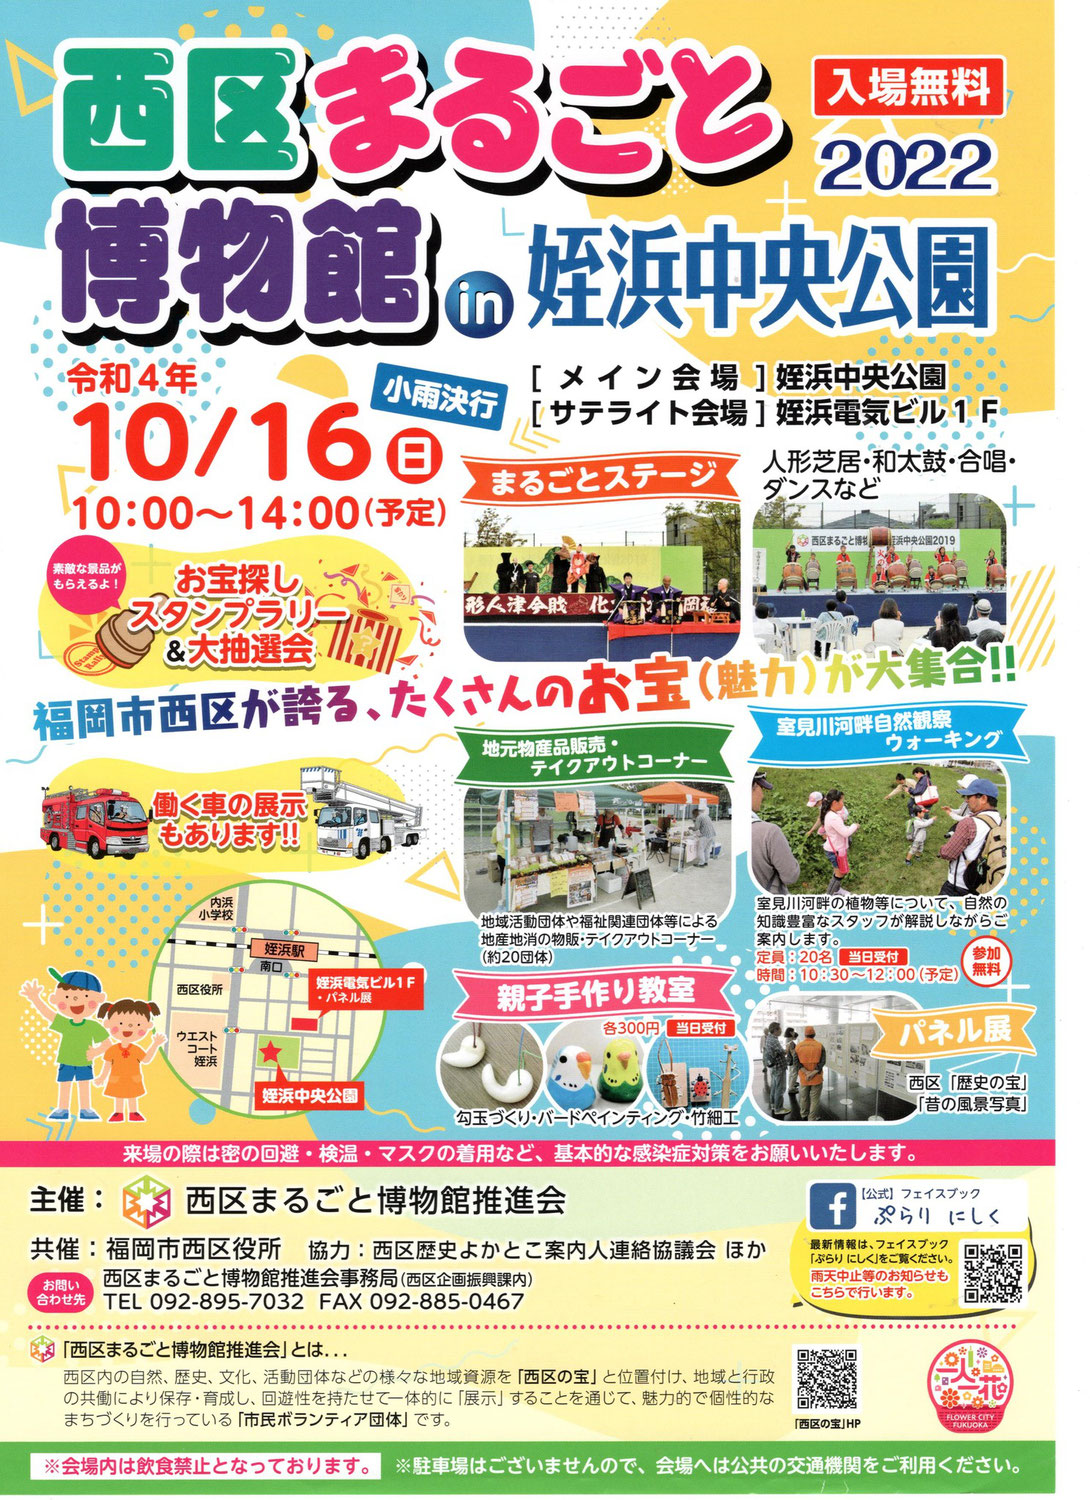 10/16(日)開催♪西区まるごと博物館in姪浜中央公園2022♪